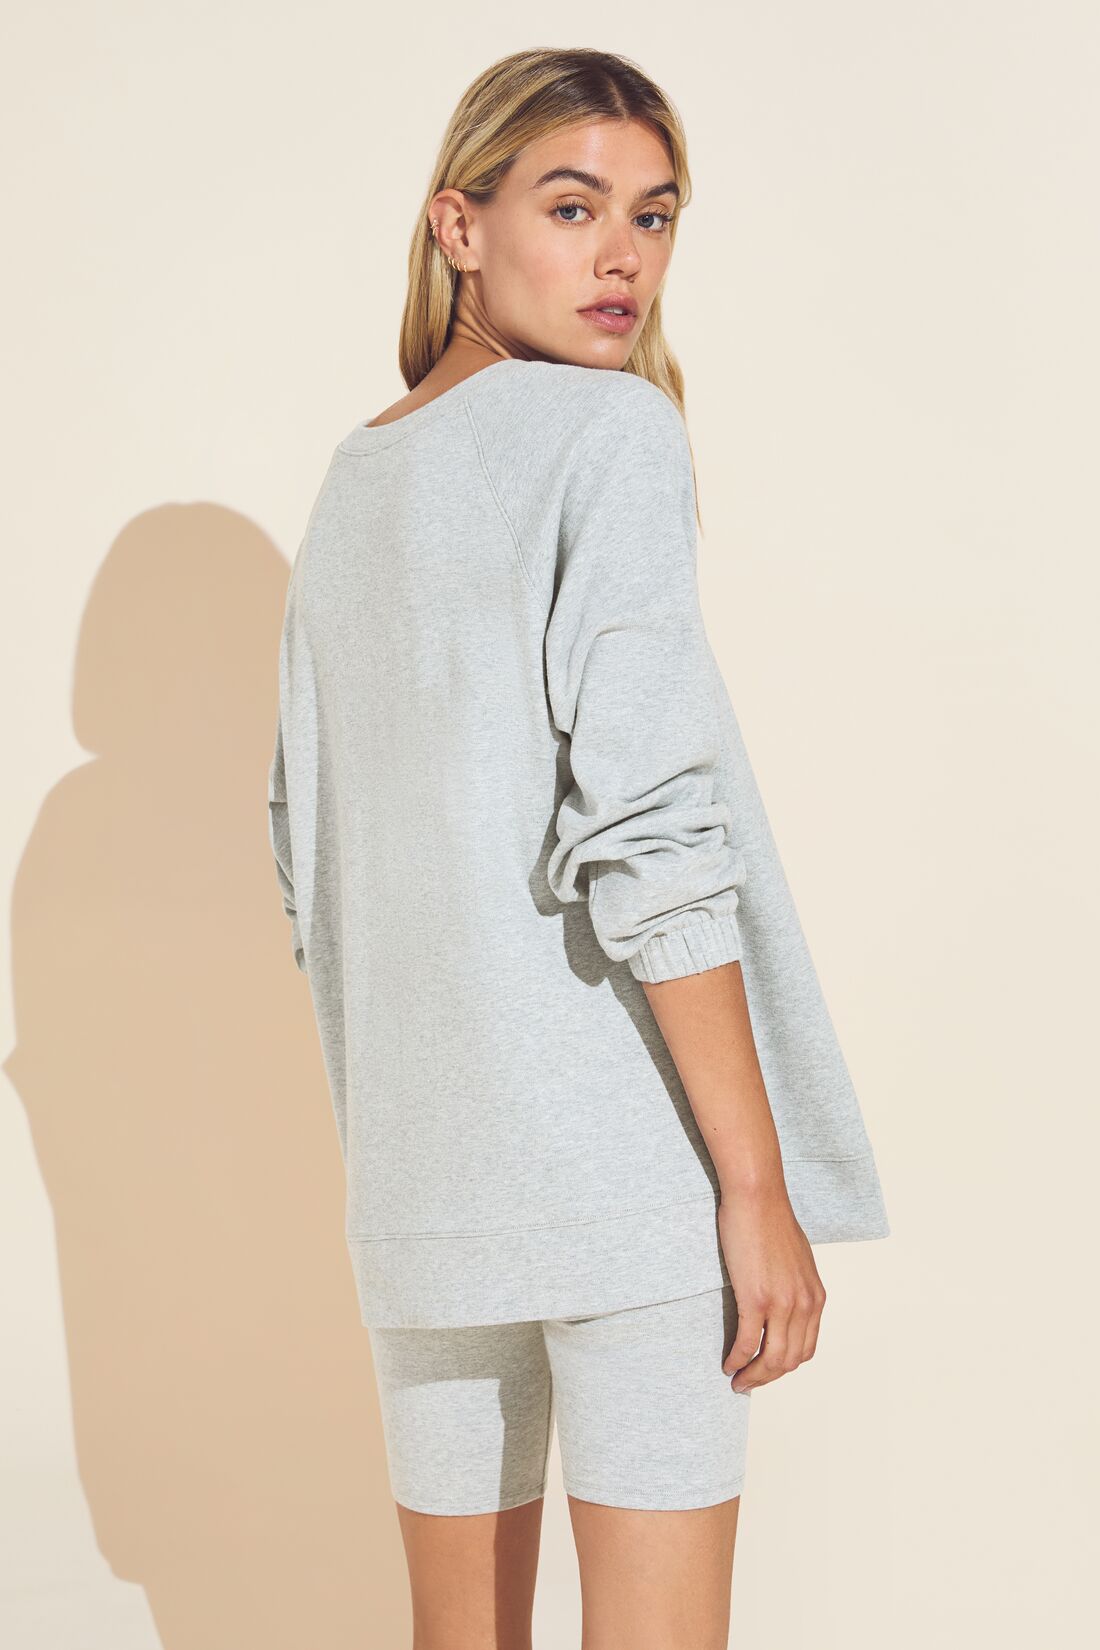 Luxe Sweats Sweatshirt - Heather Grey